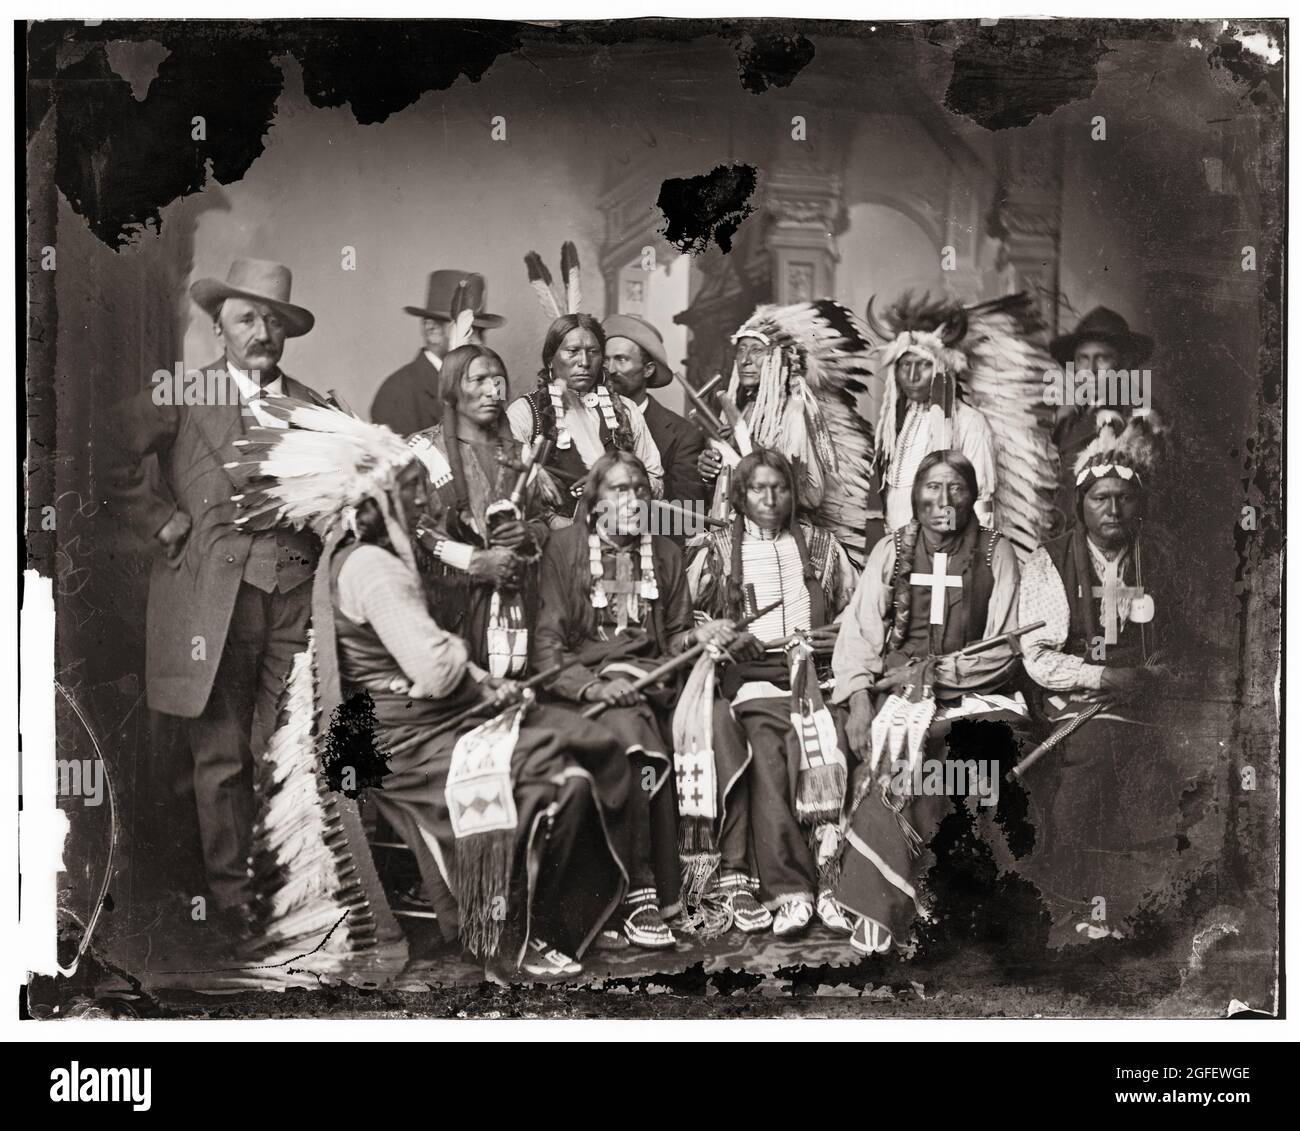 Délégations indiennes de Sioux et d'Arrapahoe – Brady, Mathew B., environ 1823-1896, photographe. Photo prise 1860-1880. Banque D'Images